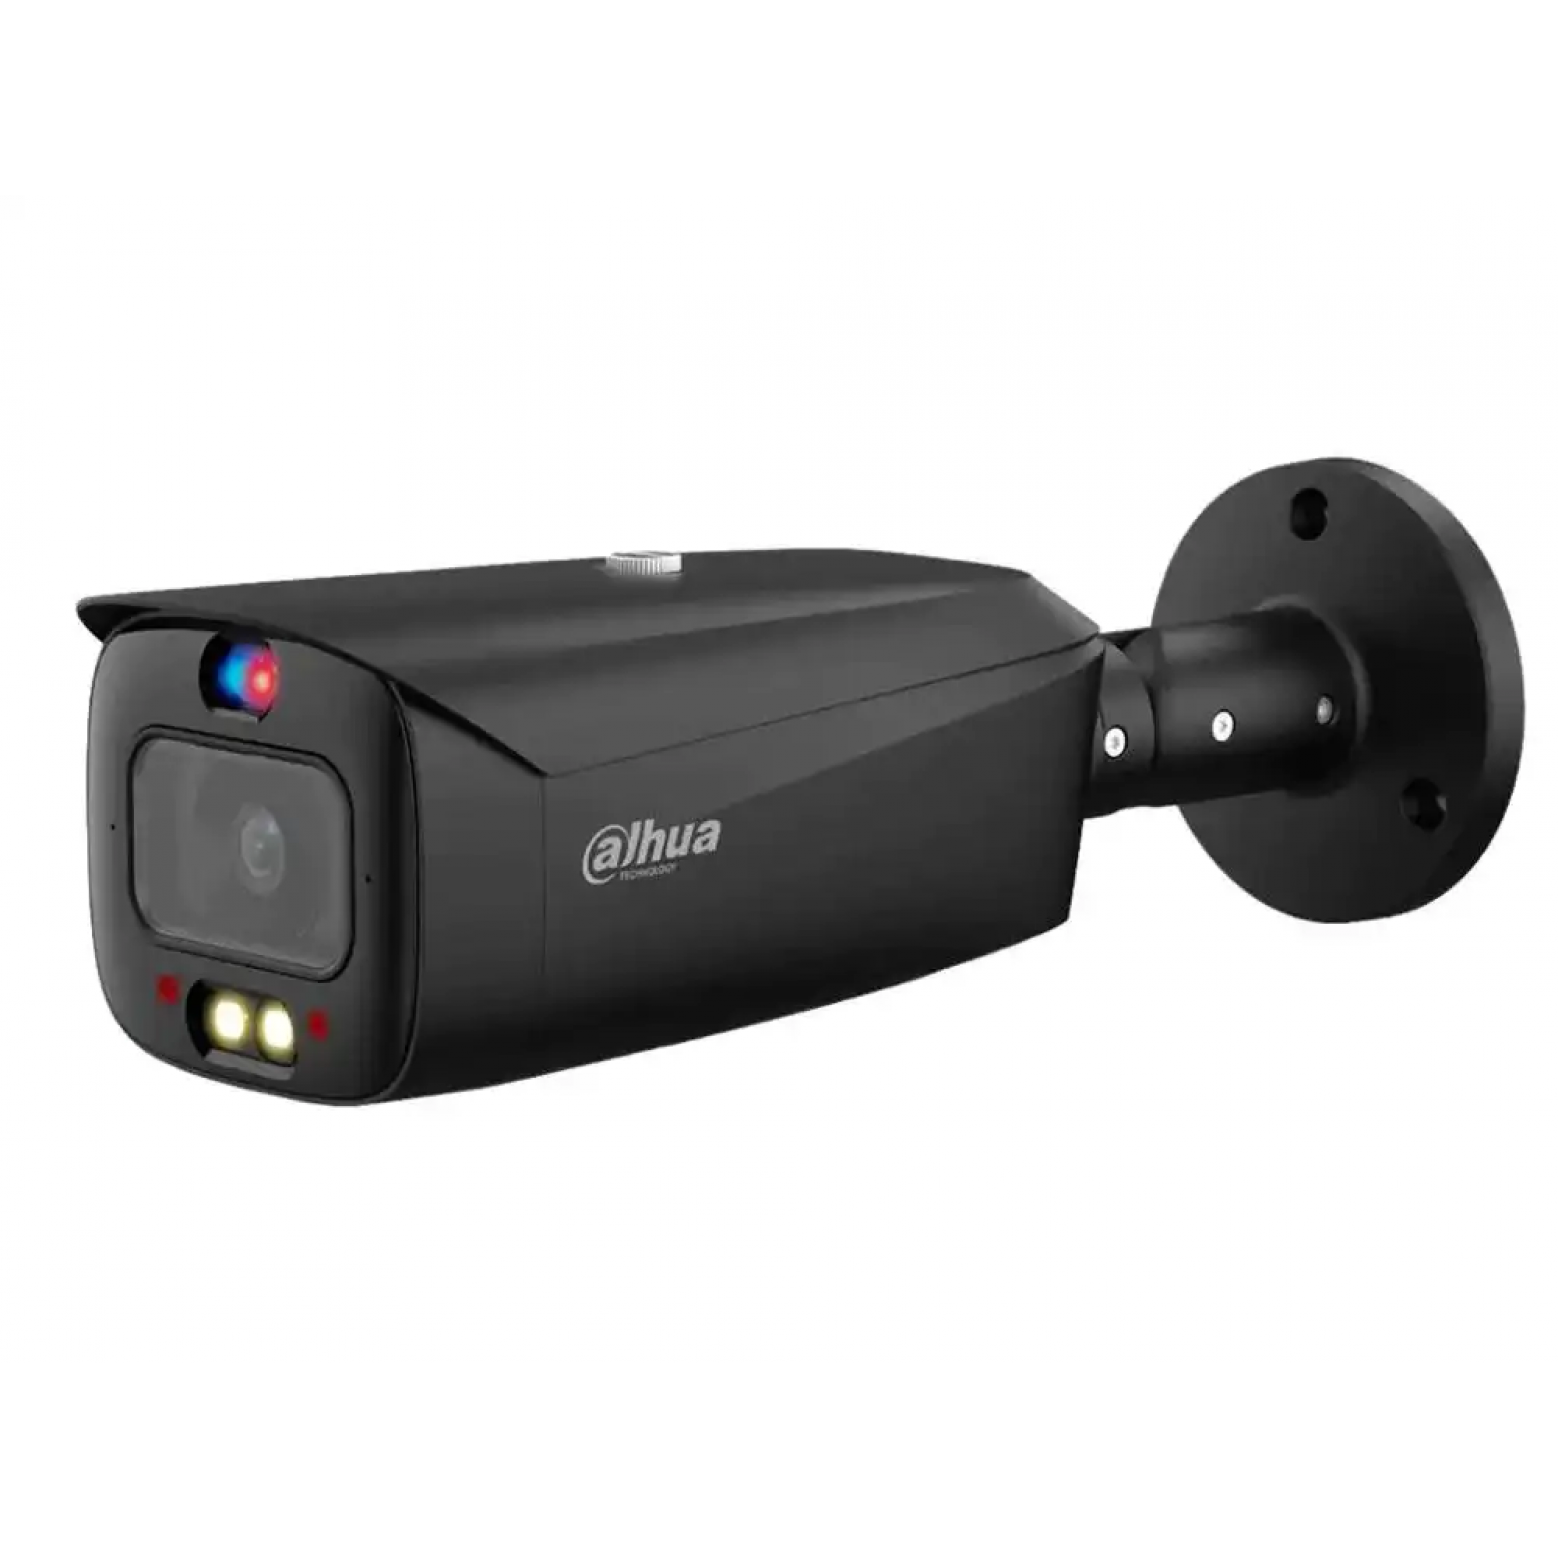 Dahua IPC-HFW3849T1-AS-PV-S4-B - Wiszense - Couleur - Tioc - IP - Caméra Bullet - 8MP - Varifocale 2.7-13.5mm - PoE - Noir